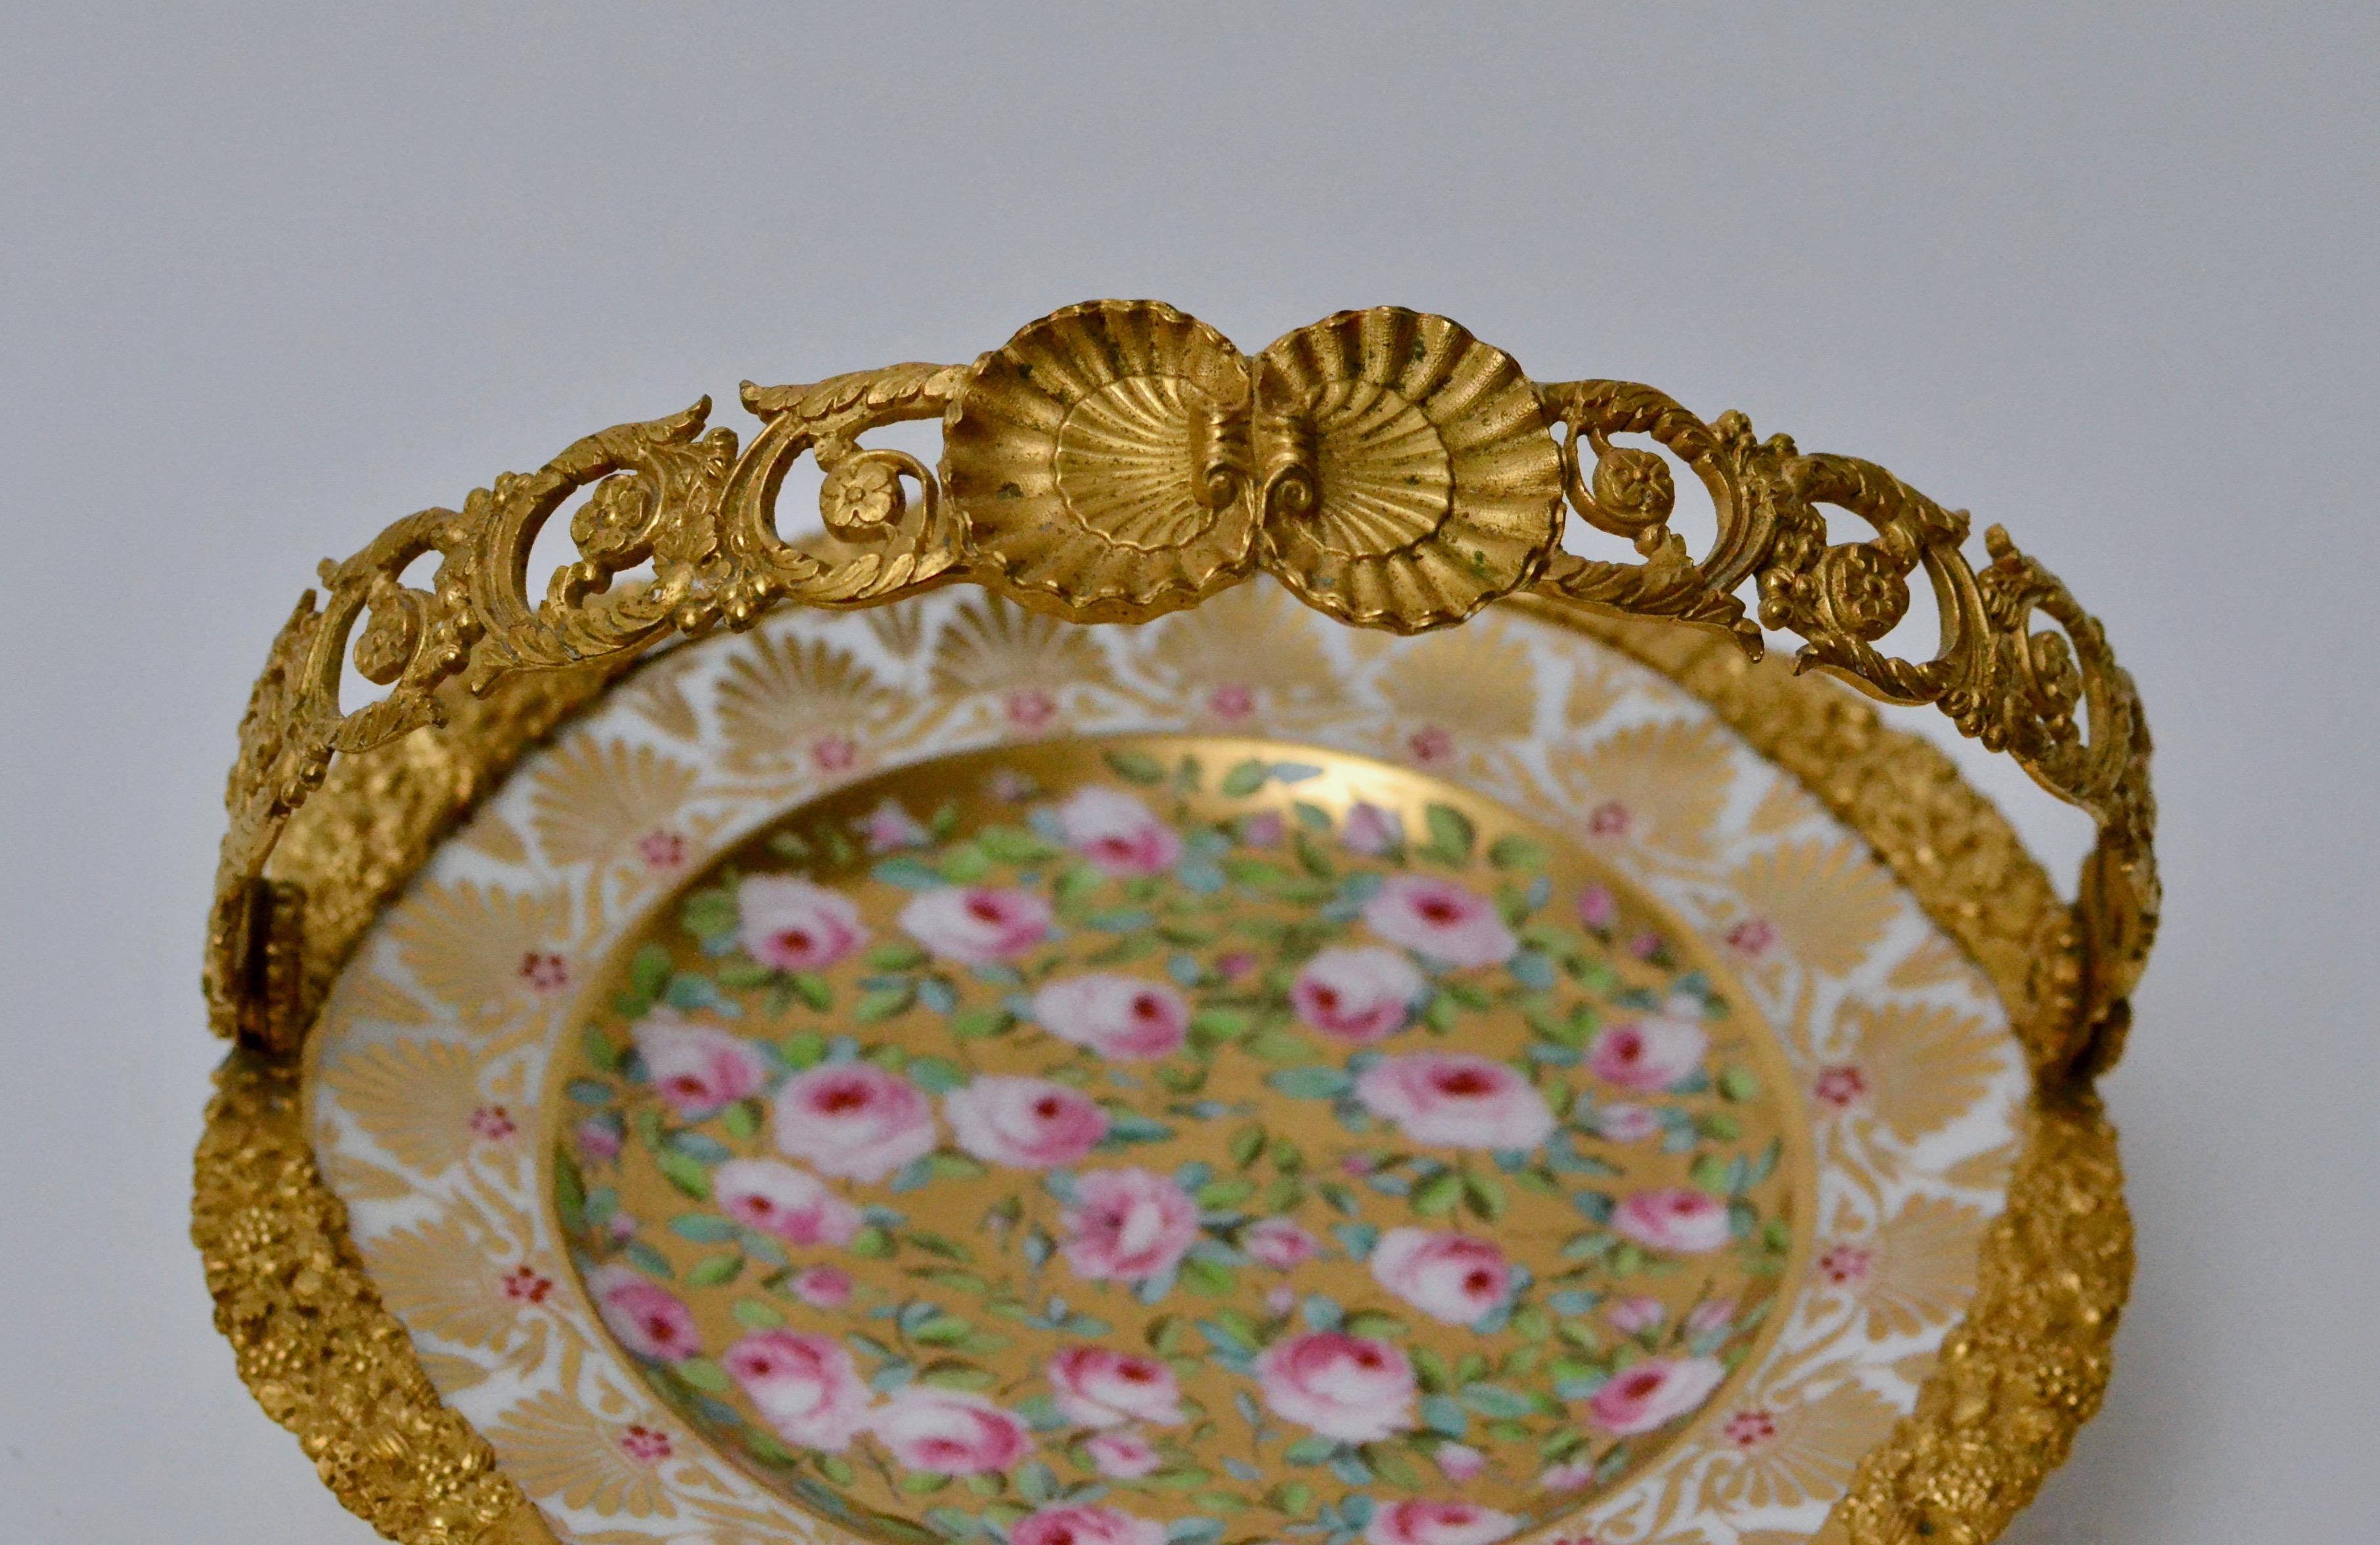 Tortenständer mit bemaltem Porzellanteller und vergoldetem Bronzegriff. Erste Hälfte des 19. Jahrhunderts. Das Porzellan ist fein mit Rosen und Gold bemalt.